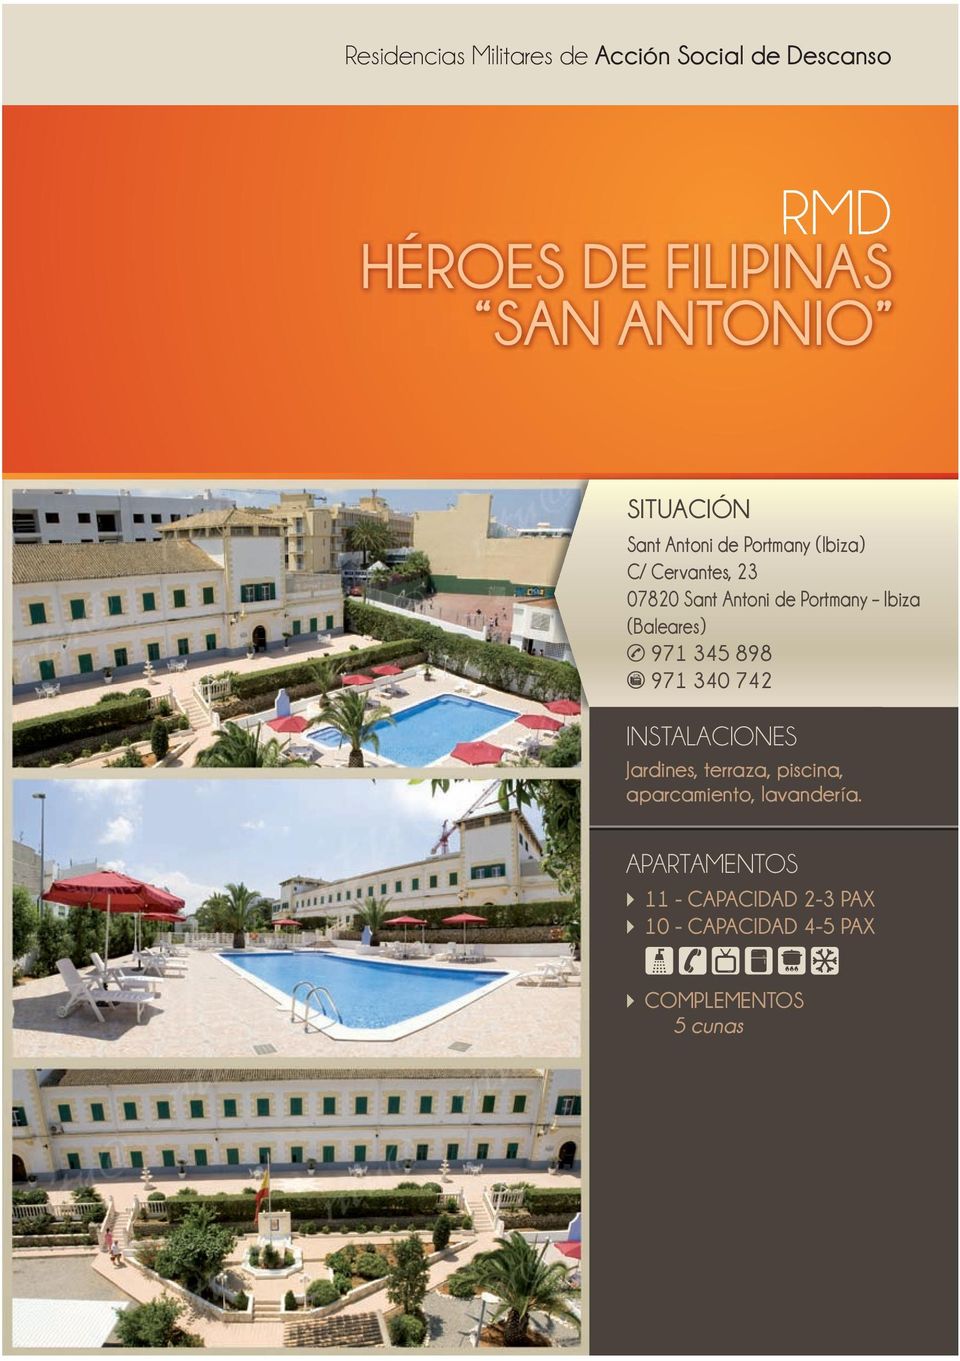 Portmany Ibiza (Baleares) 971 345 898 971 340 742 Jardines, terraza, piscina,